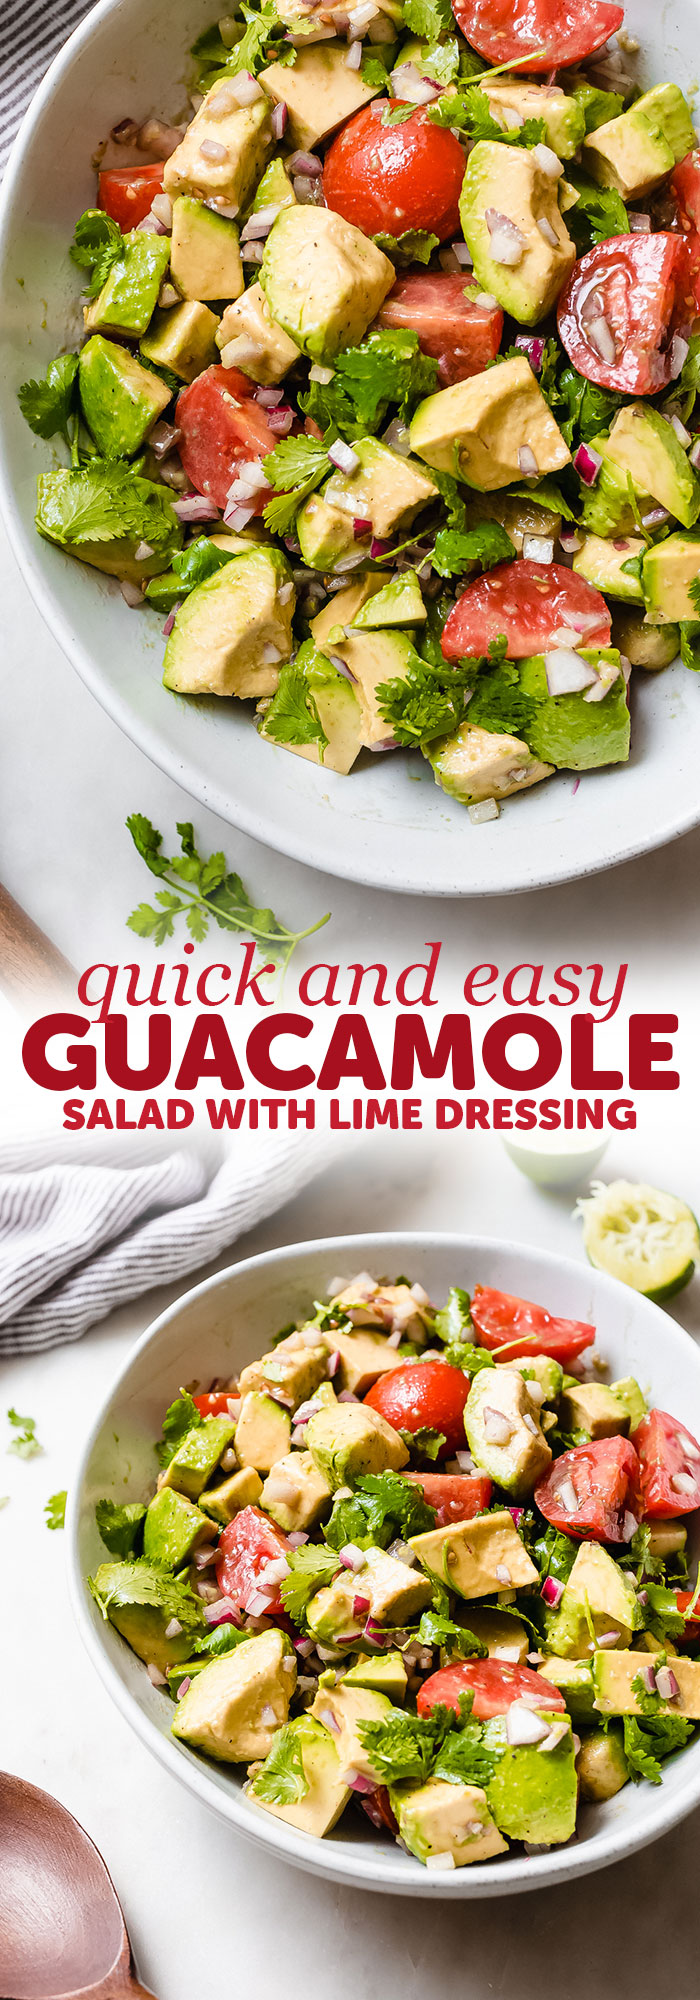 easy guacamole salad